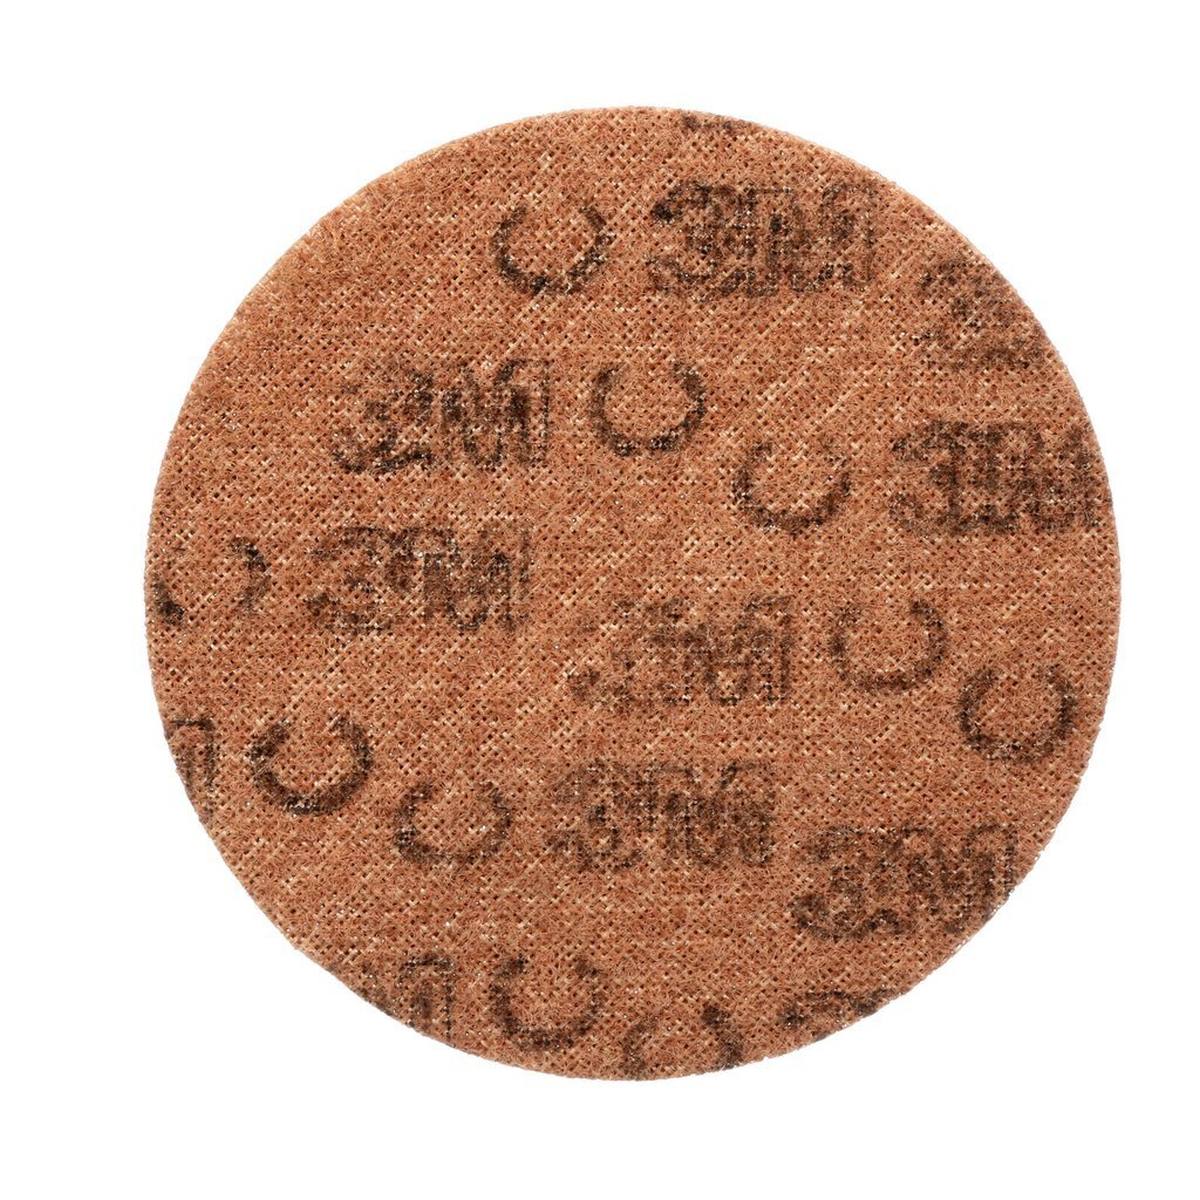 3M Scotch-Brite disco in tessuto non tessuto SC-DH senza centratura, marrone, 125 mm, A, ruvido #65334